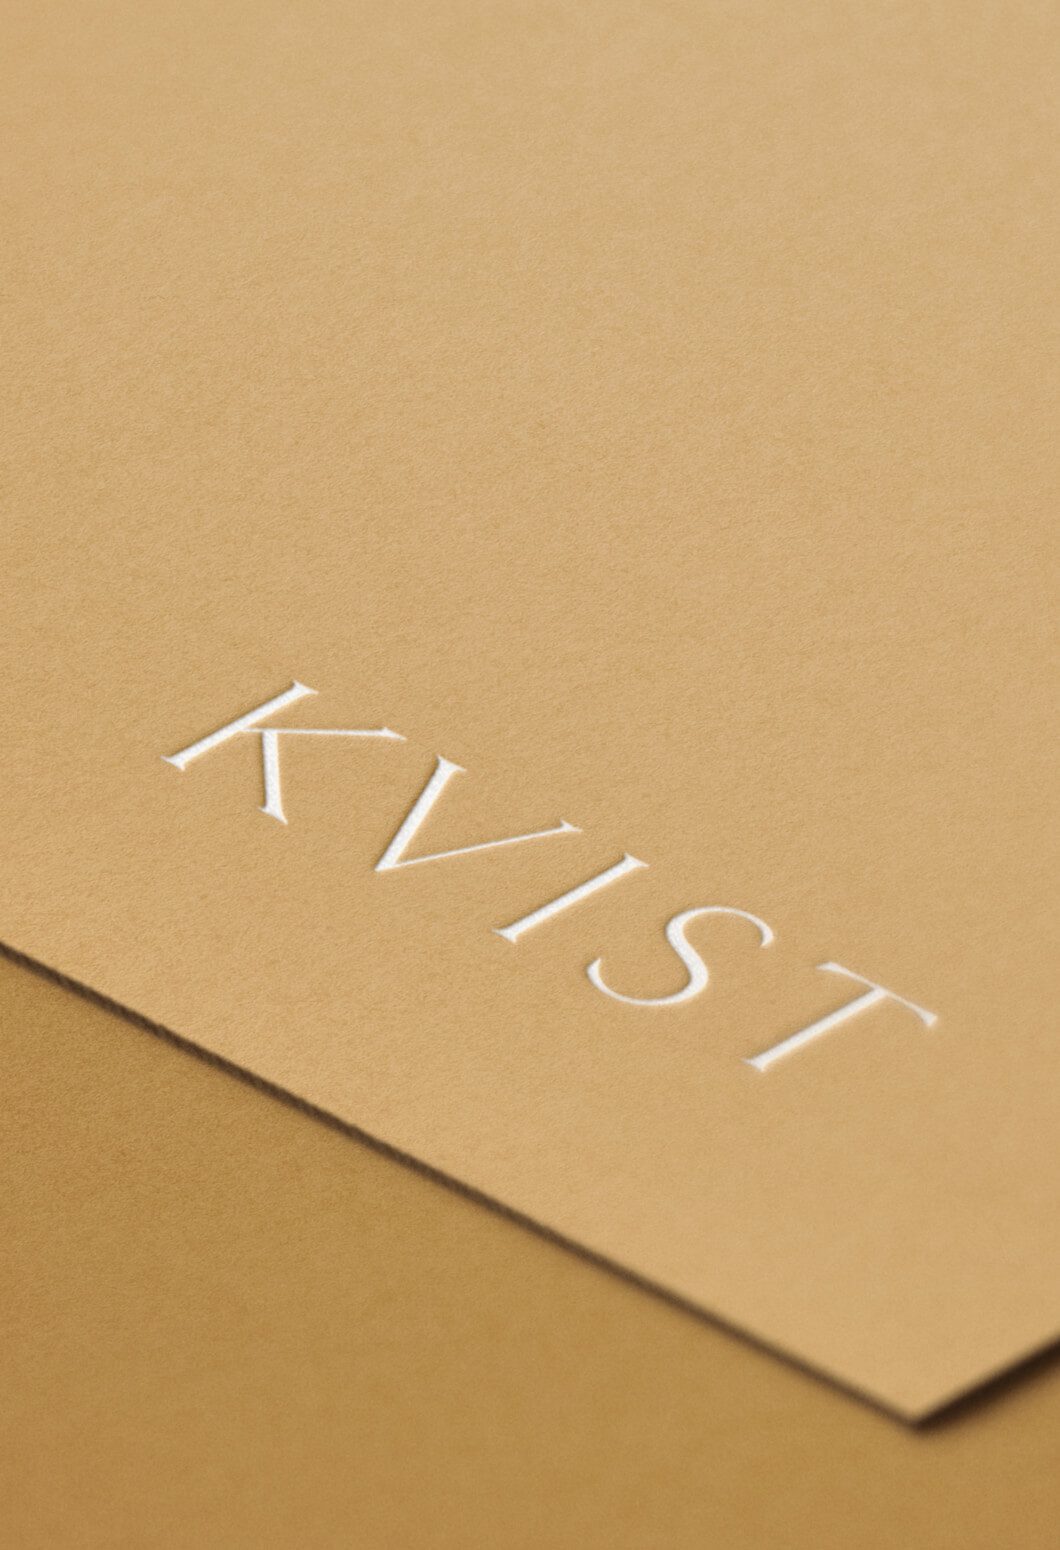 Debossed white logo onto gold stock for, KVIST